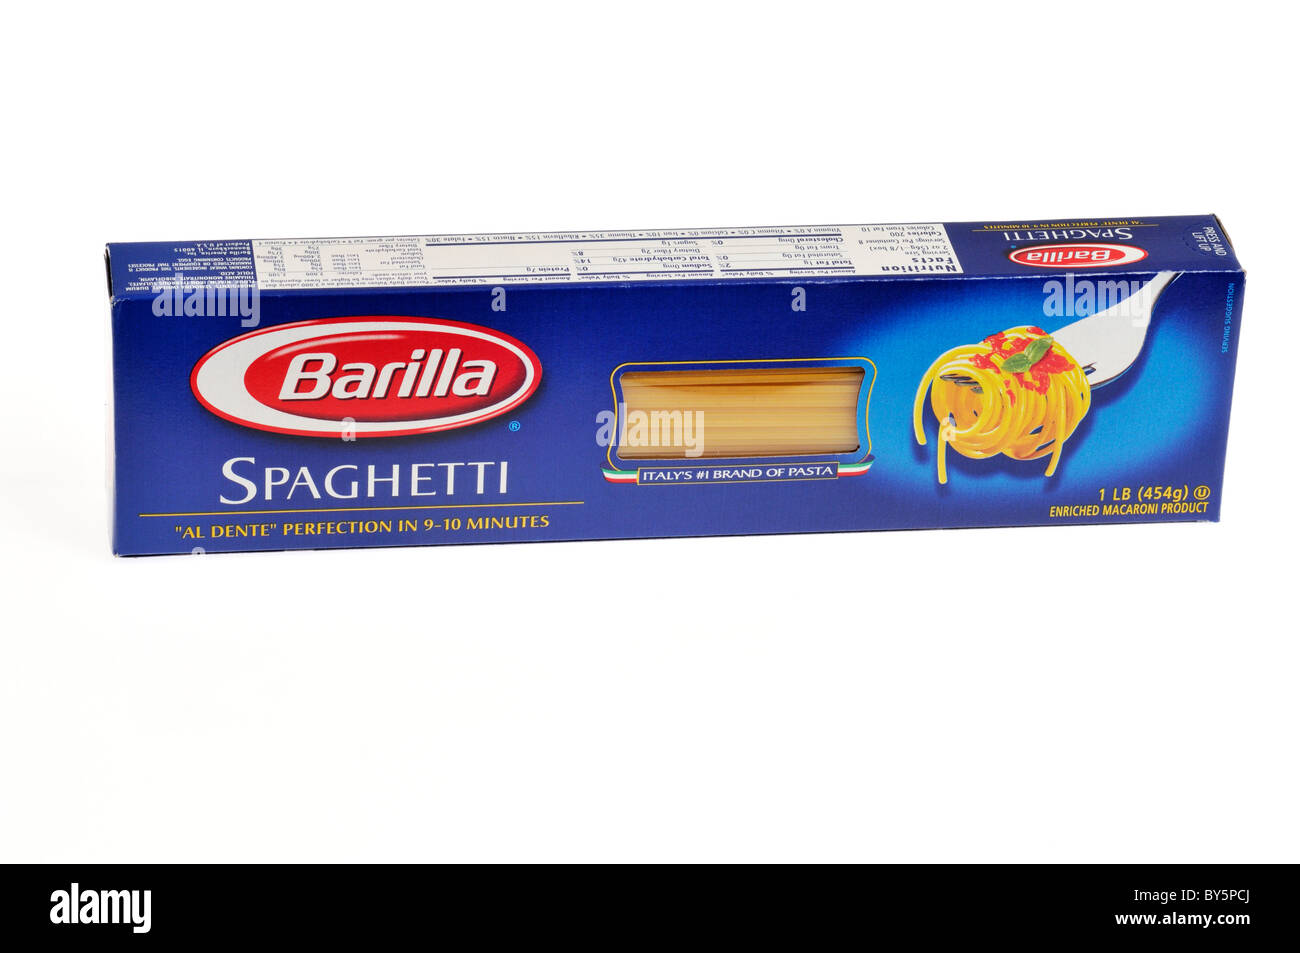 Ungeöffnete Verpackung von Barilla spaghetti Pasta auf weißem Hintergrund, Ausschnitt. Stockfoto